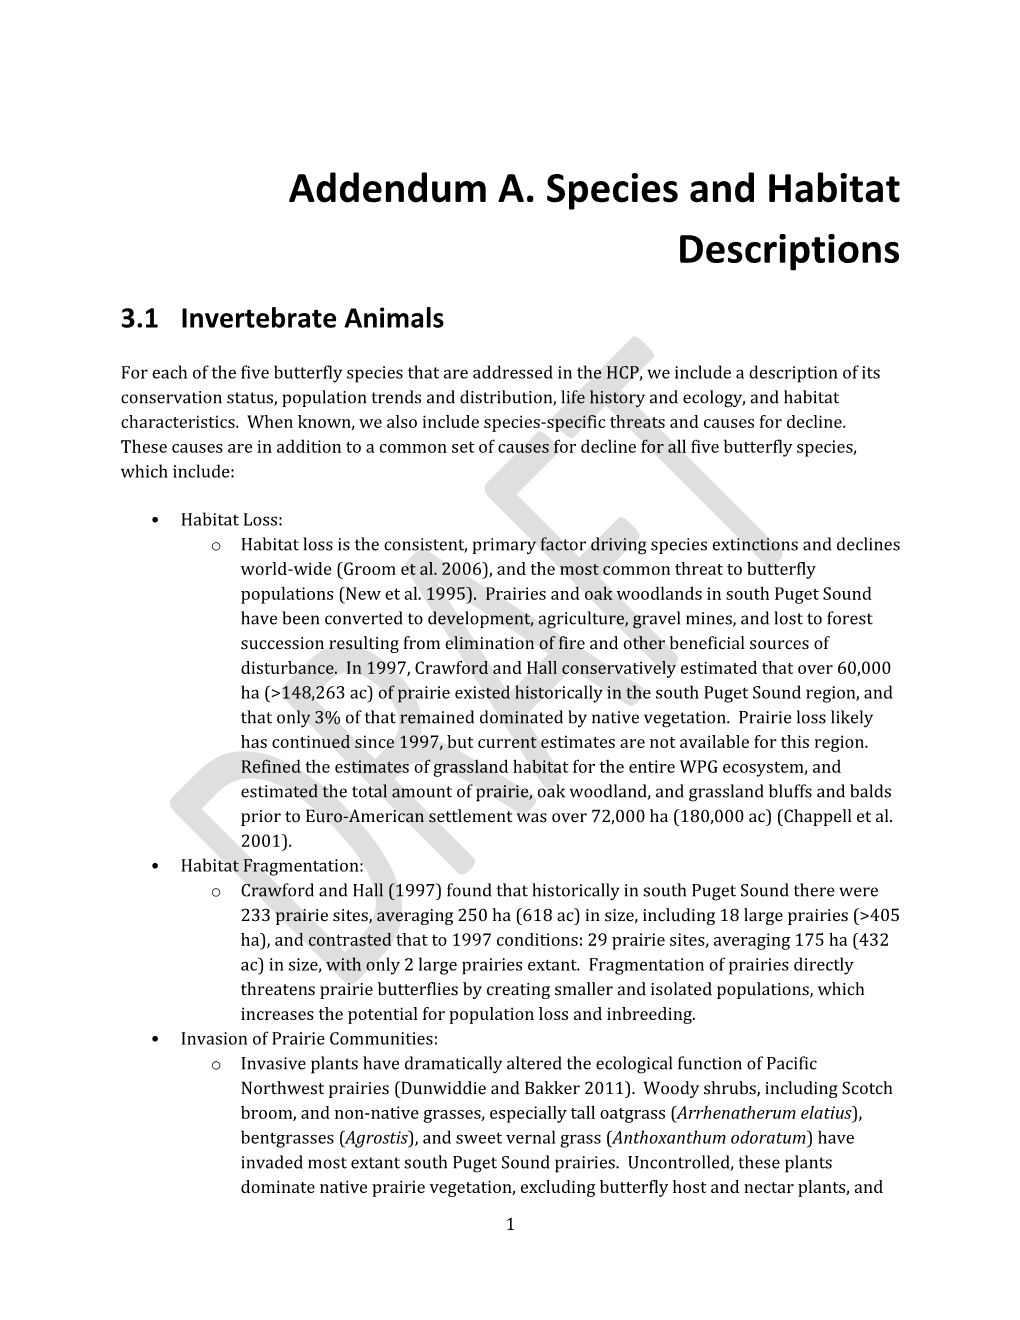 Addendum A. Species and Habitat Descriptions